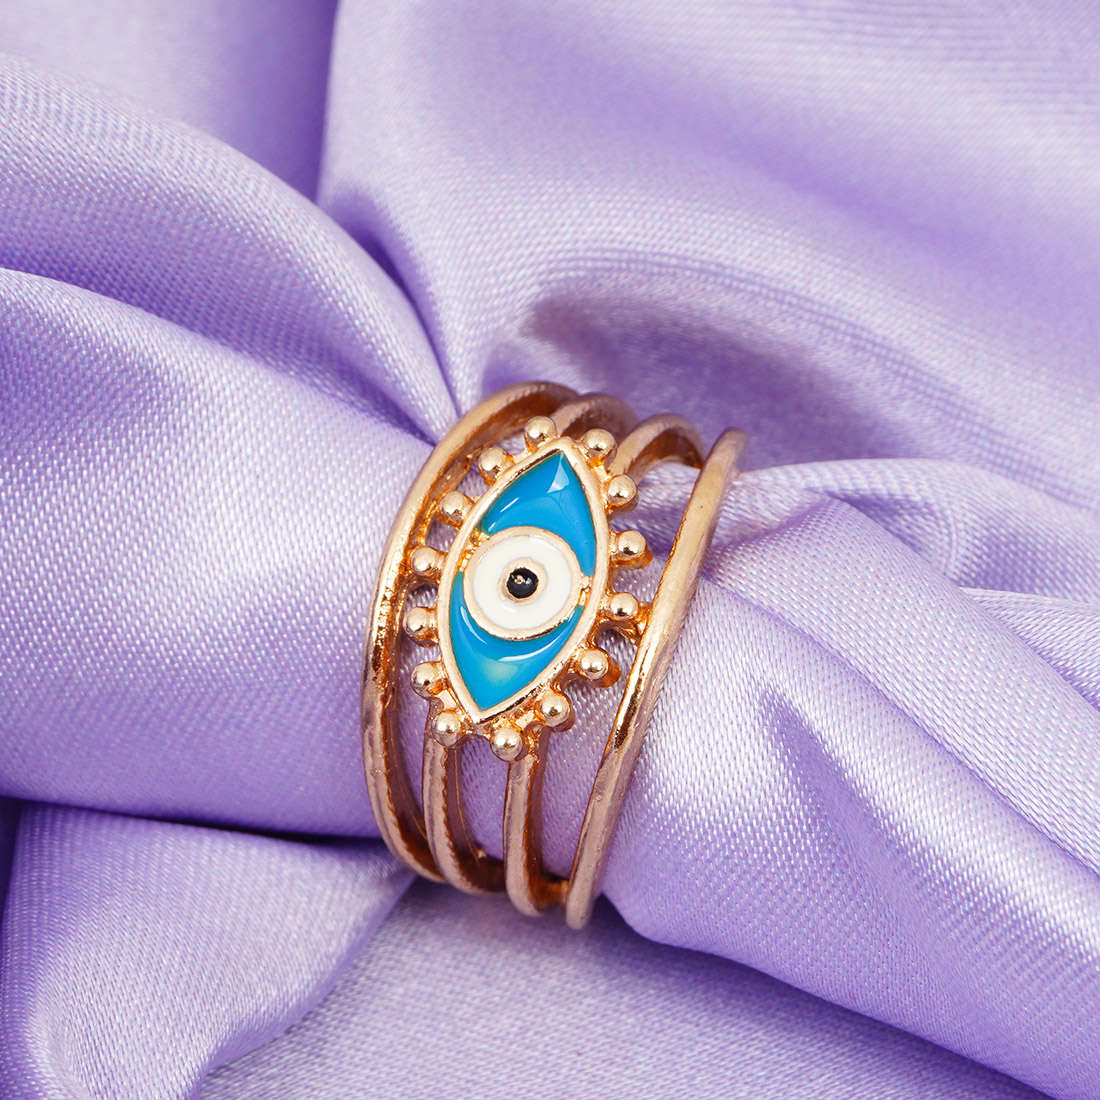 Blue Evil Eye Ring